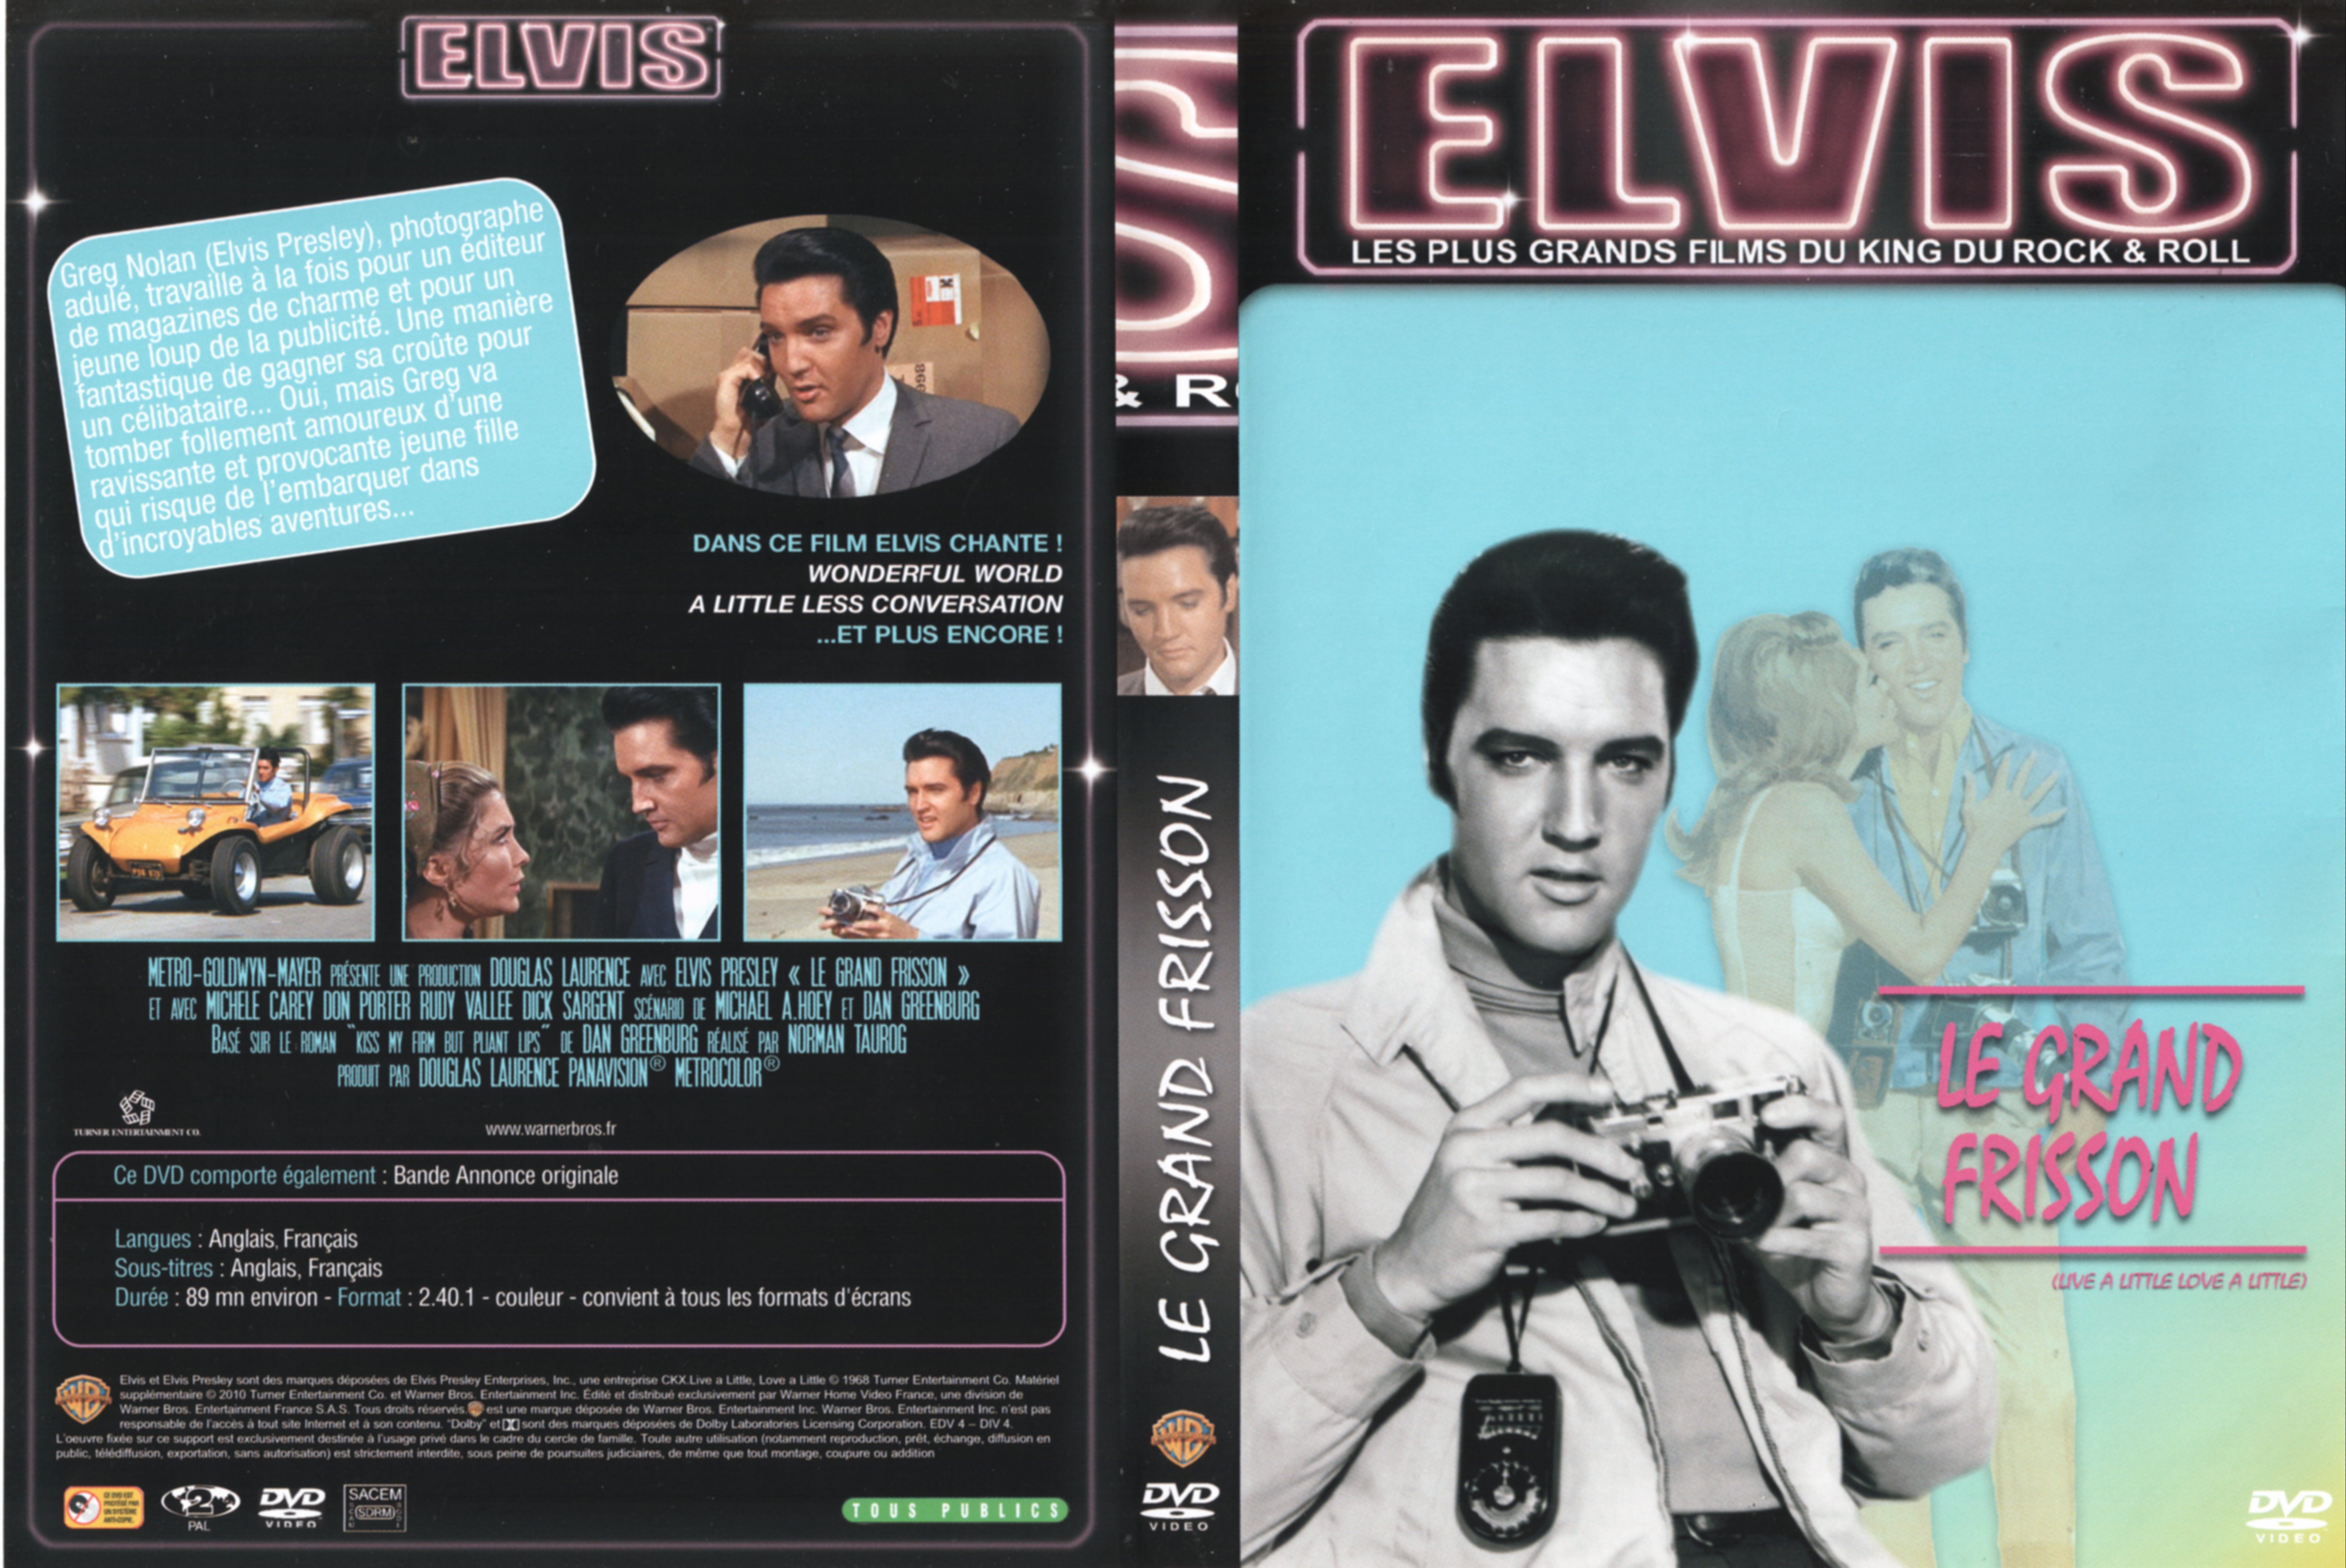 Jaquette DVD Le grand frisson (Elvis Presley)